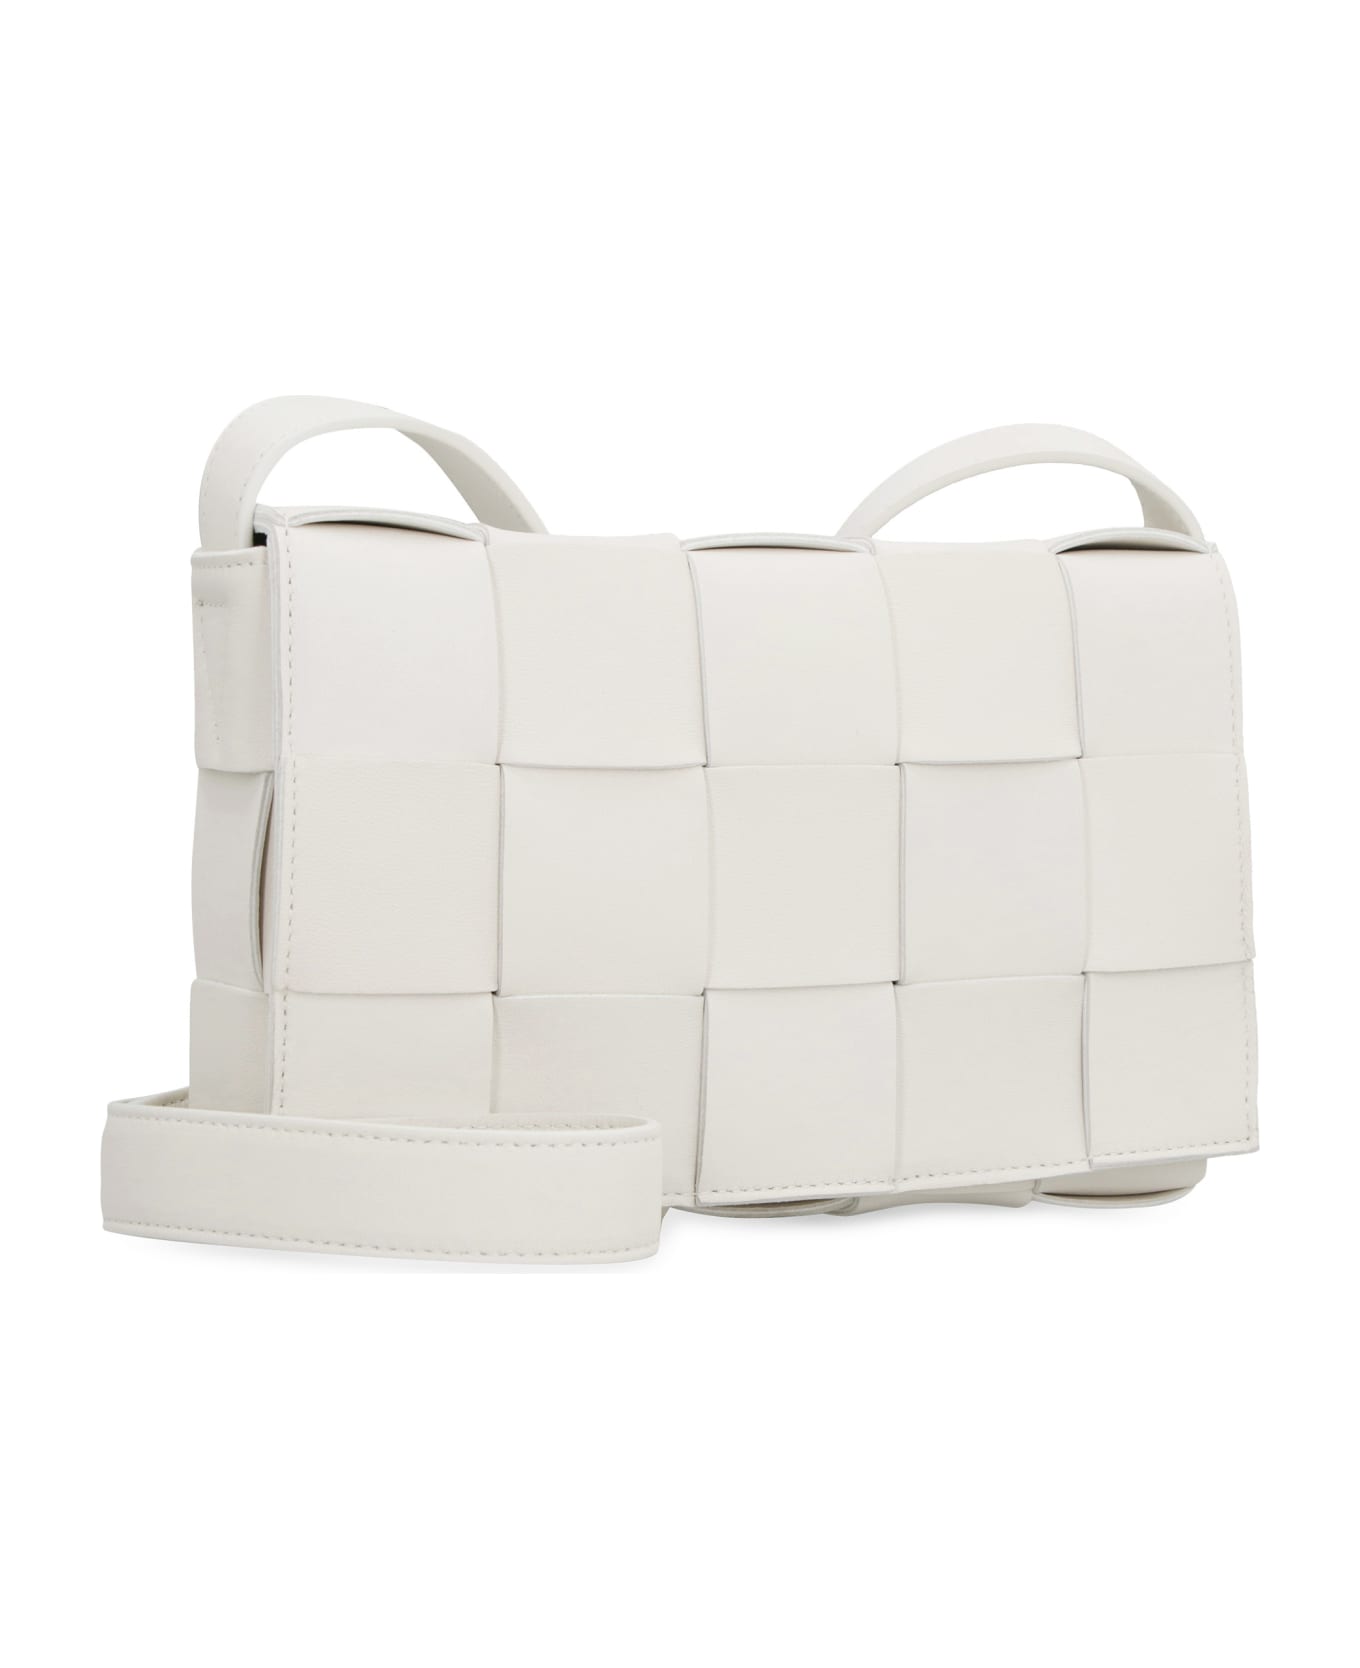 Bottega Veneta Cassette Leather Crossbody Bag - White